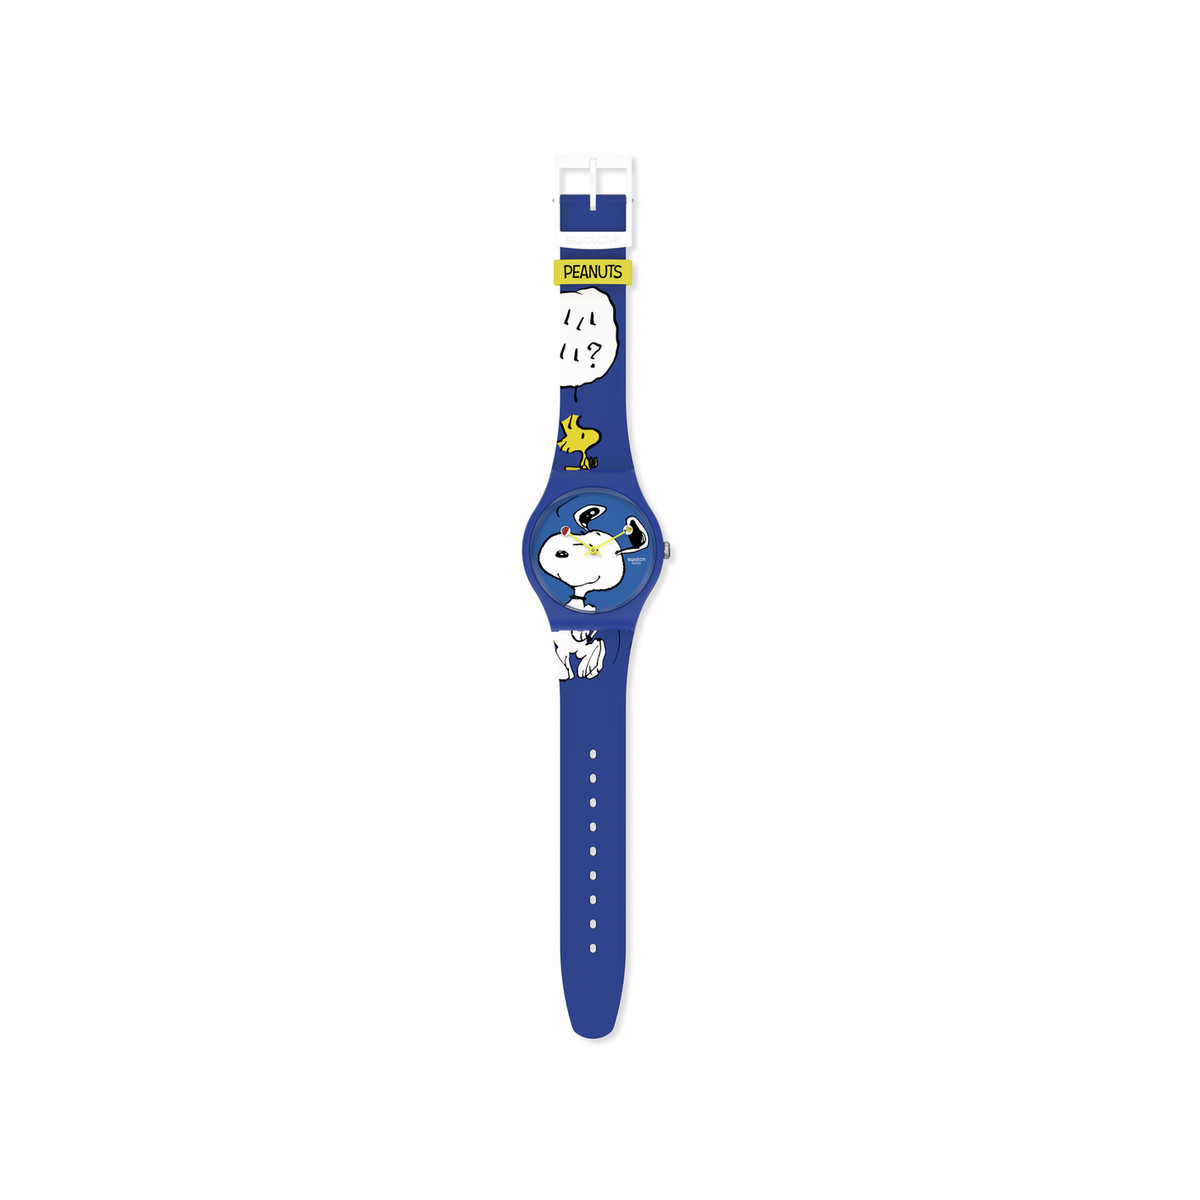 Montre Swatch mixte matériaux biosourcés bleus motif personnages Peanuts - vue 3